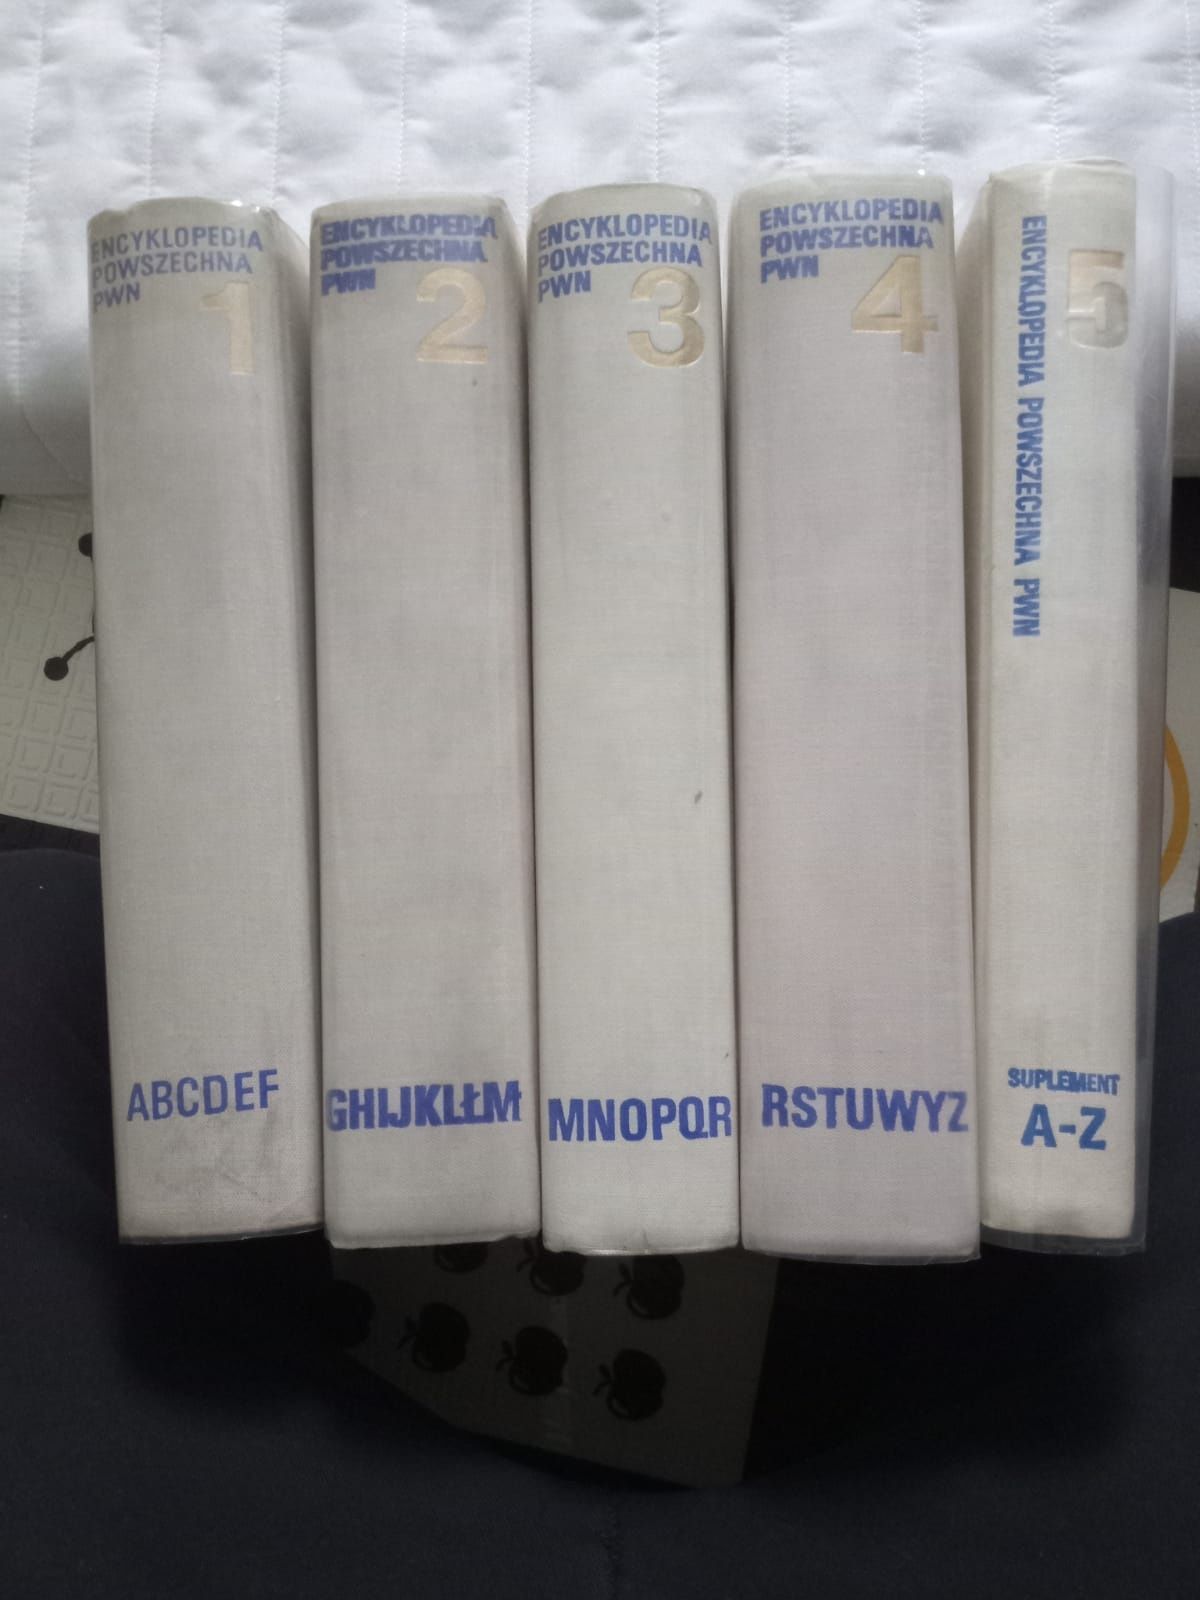 Encyklopedia powszechna 5 tomów 1973 rok